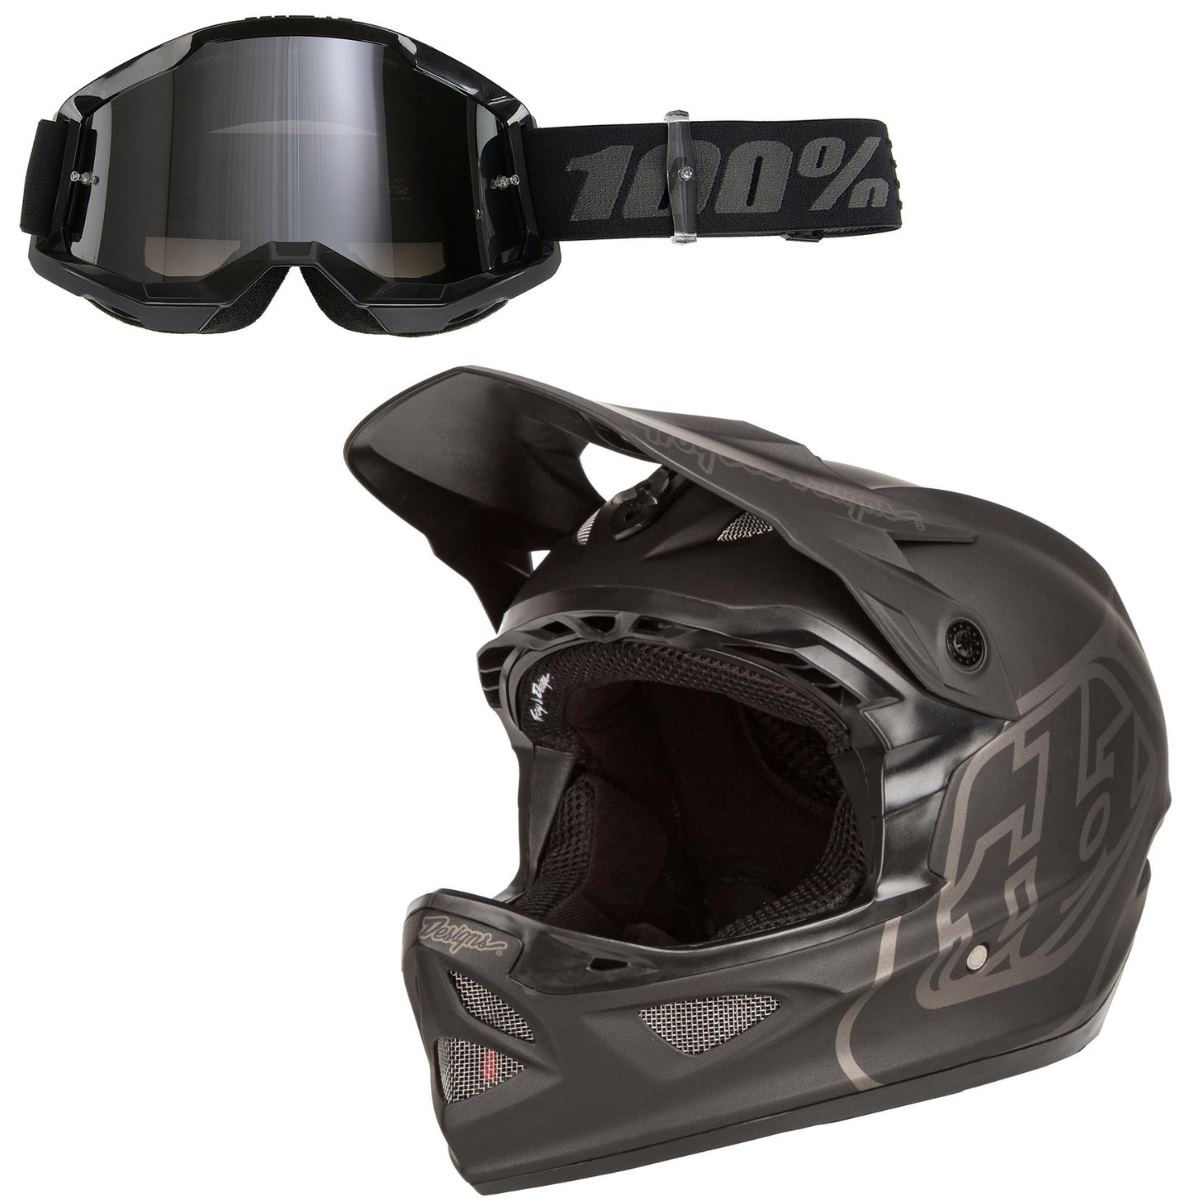 Troy Lee Designs Downhill Helm-Kit D3 Fiberlite / Strata Gen. 2 Set: 2-teilig, Schwarz, Mirror Silver